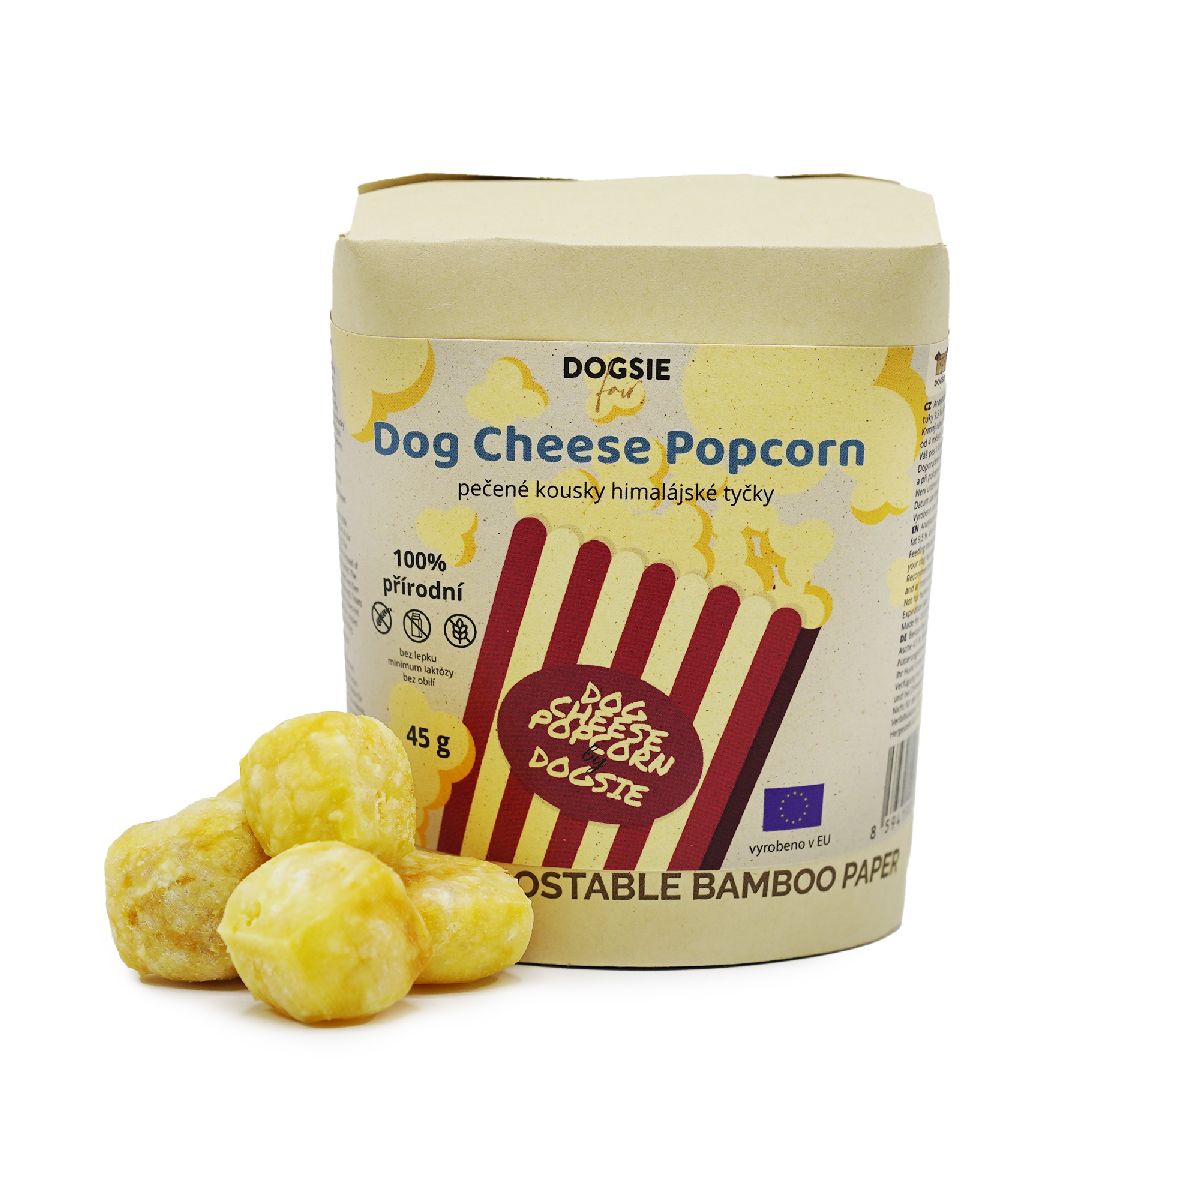 Levně Pamlsek pro psy Dogsie Fair Dog Cheese Popcorn - pečené kousky himalájské tyčky - 45 g